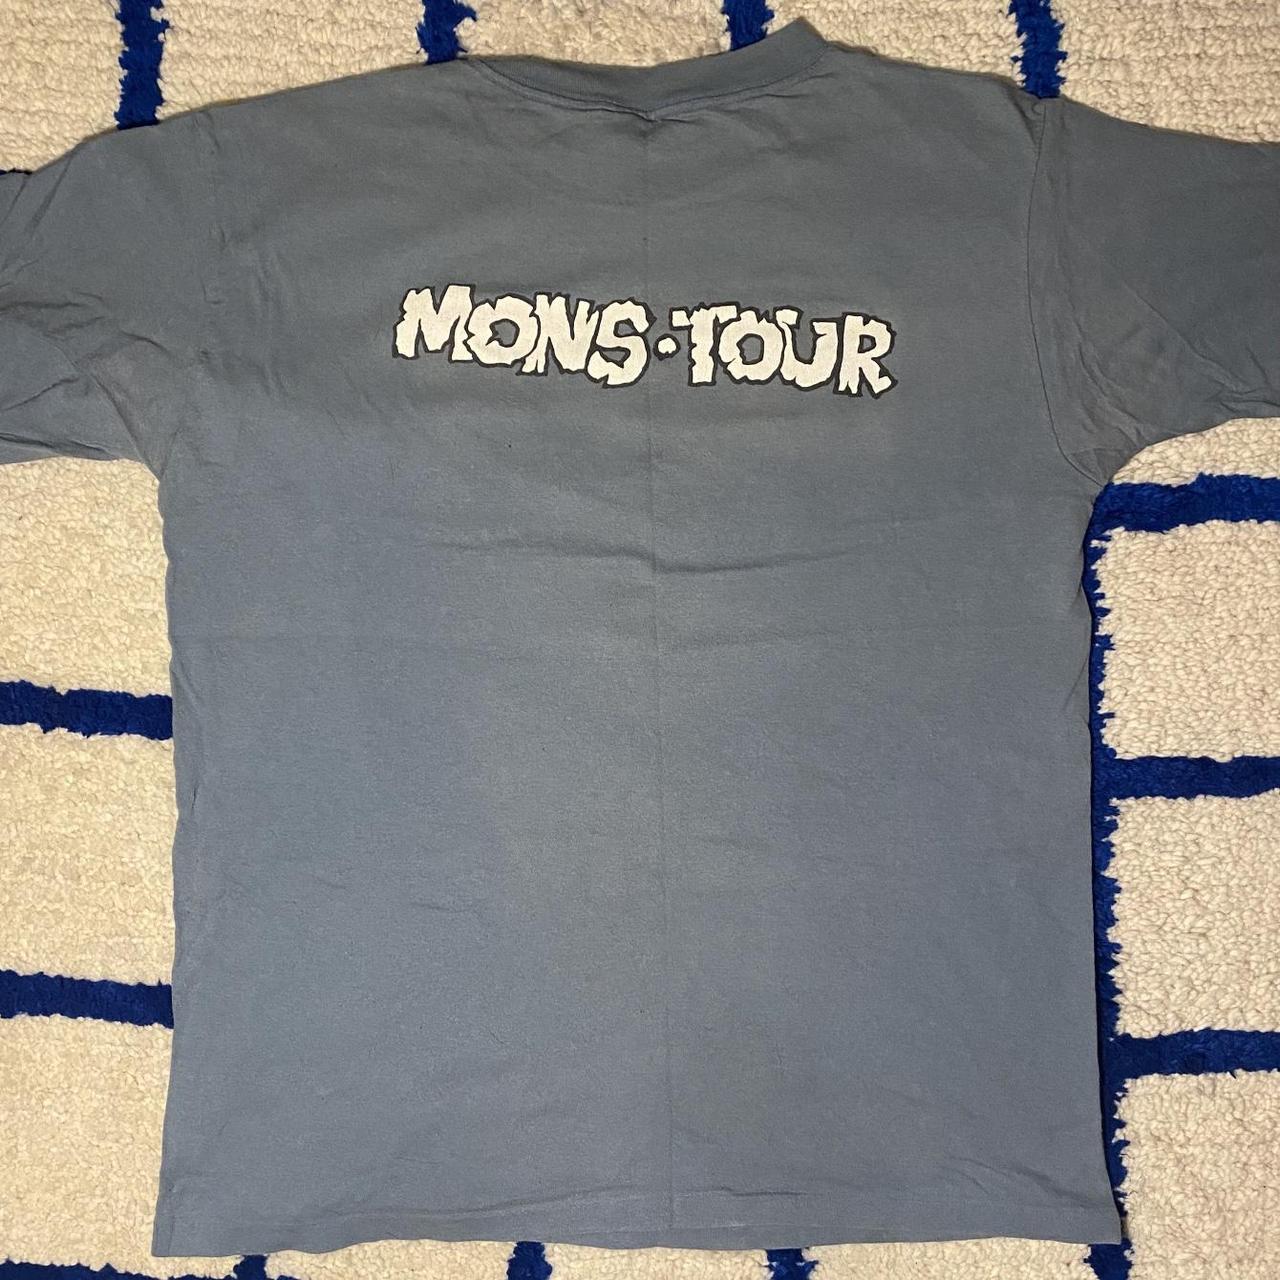 Vintage 1994/1995 NOFX “Mons-tour” t-shirt size XL.... - Depop